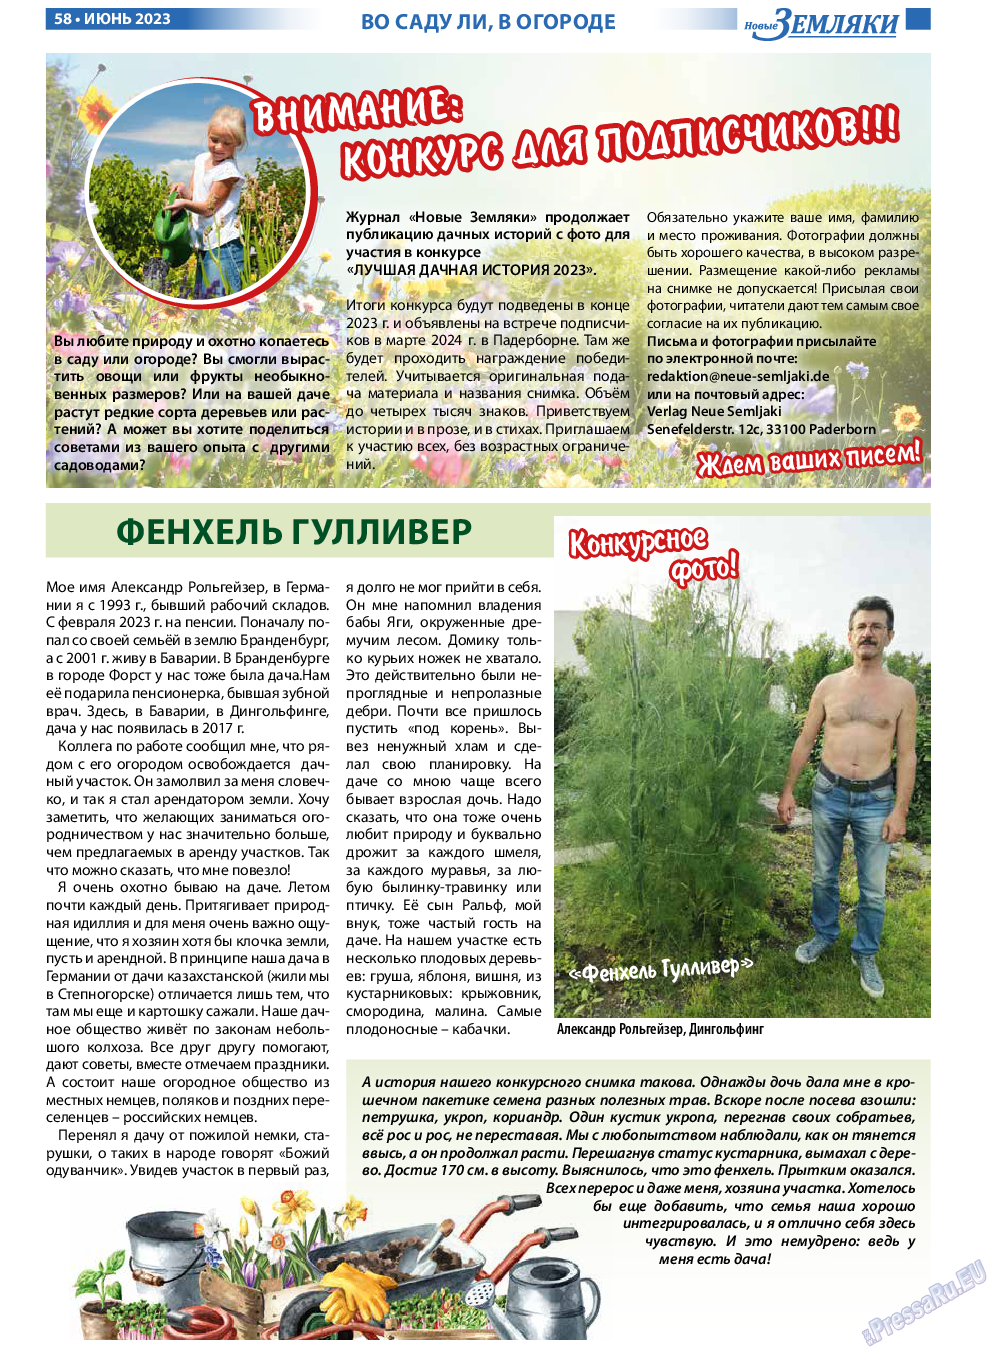 Новые Земляки, газета. 2023 №6 стр.58